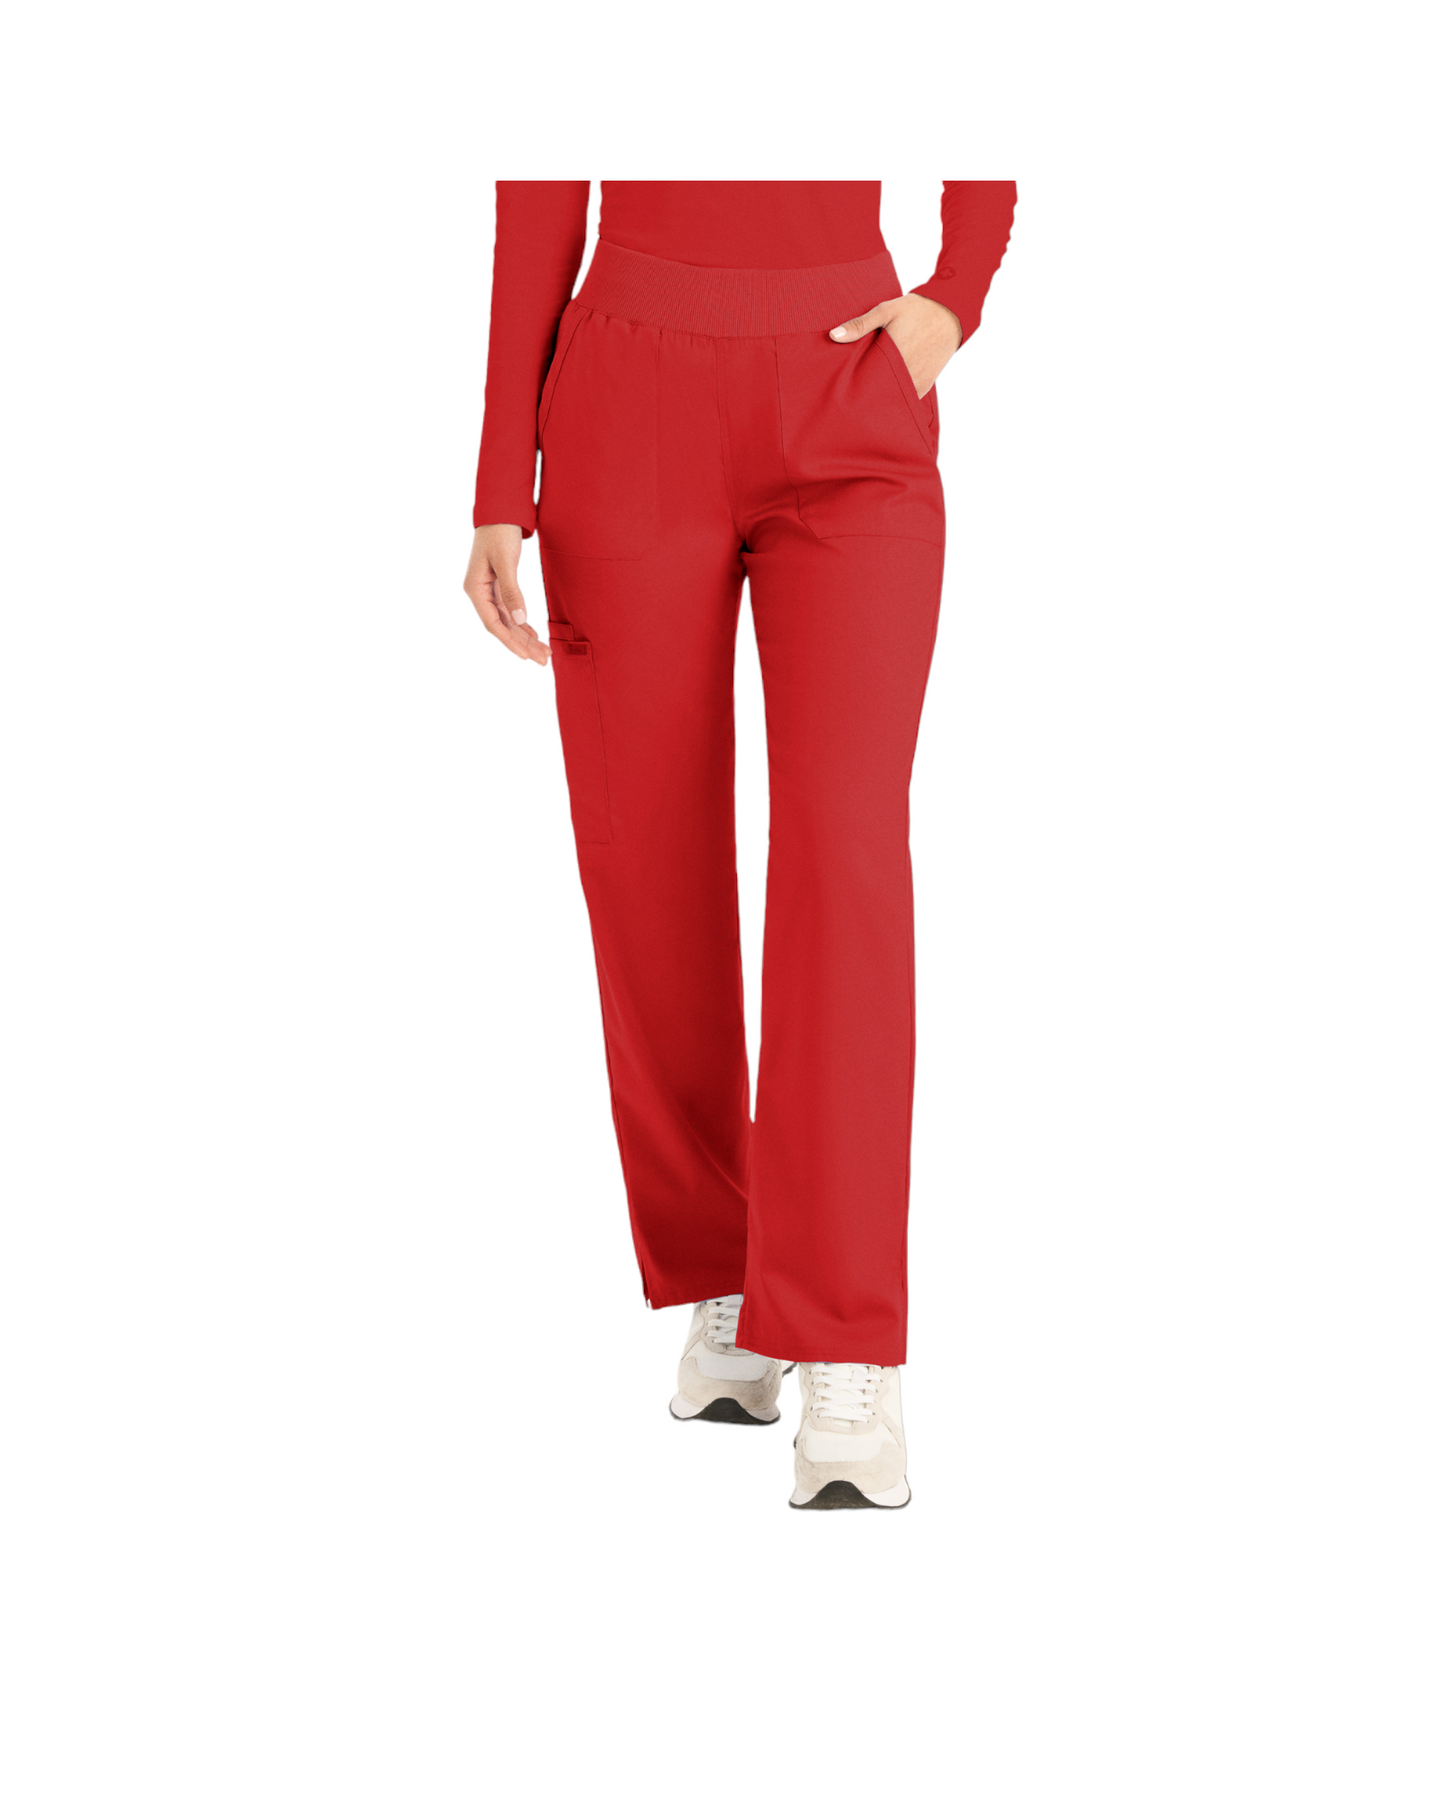 Pantalons 6 poches pour femmes Landau Proflex #LB405 OS couleur Rouge